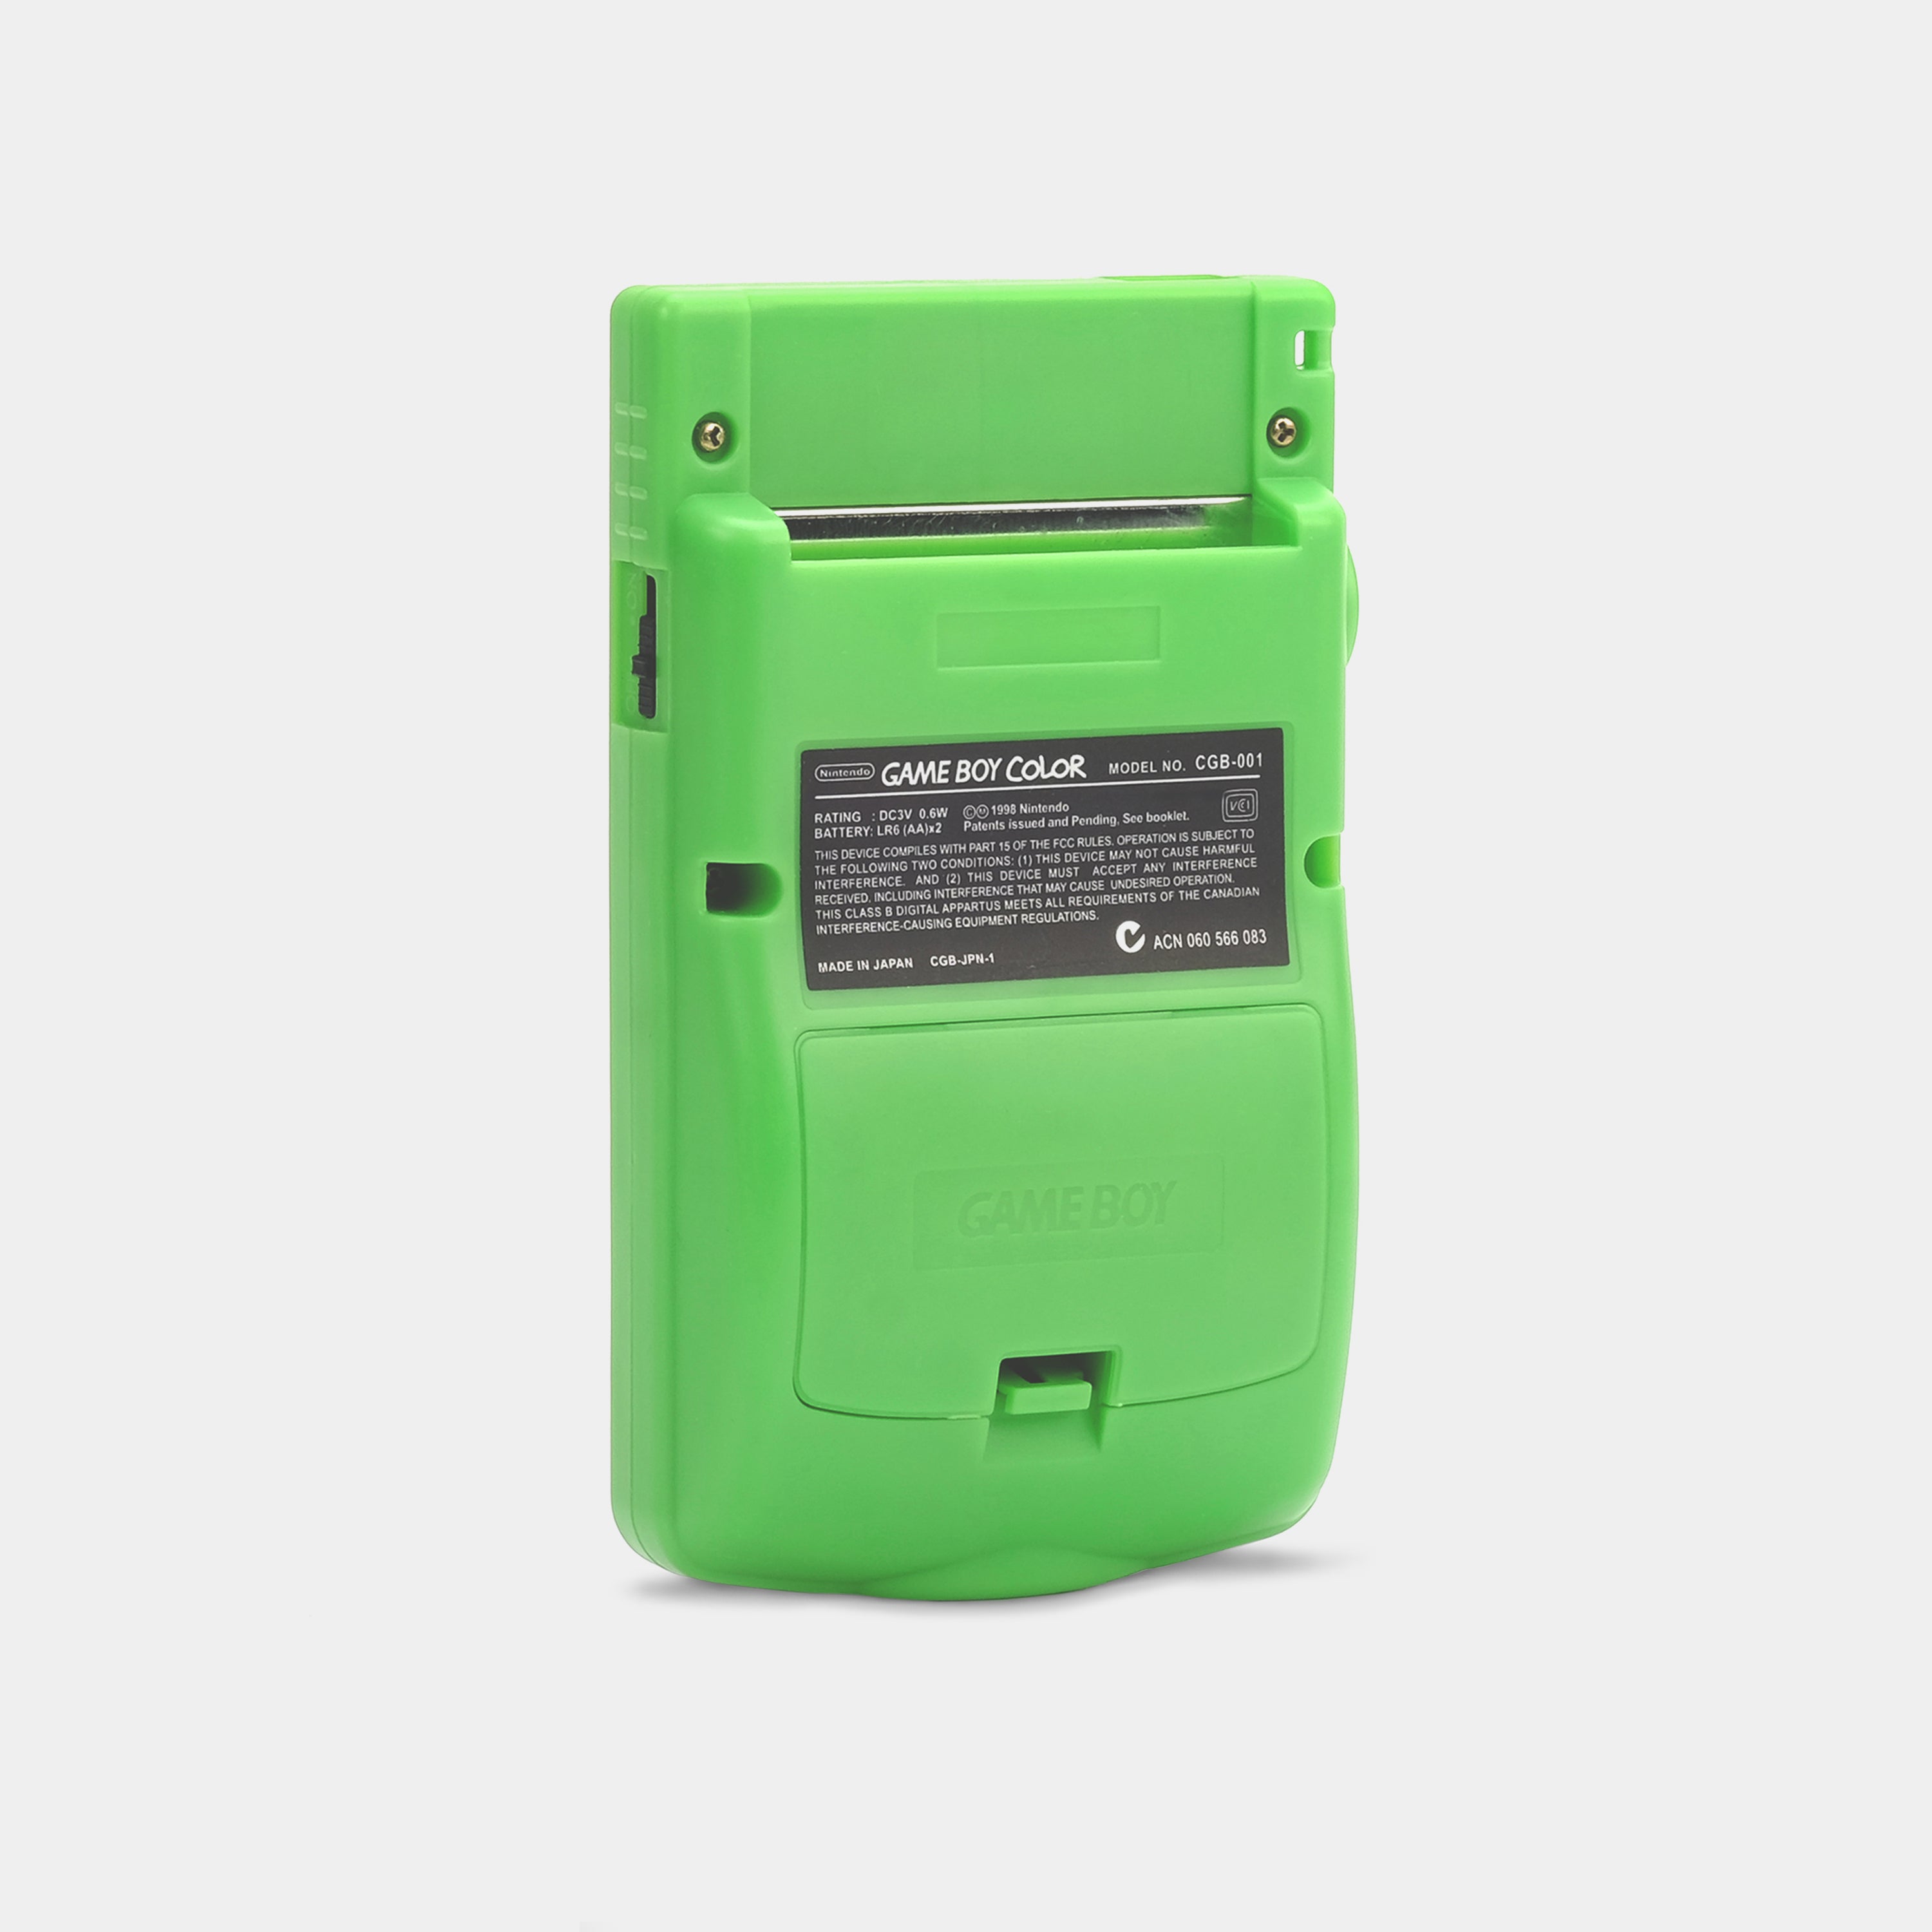 Nintendo Game Boy Color Kiwi Game Console